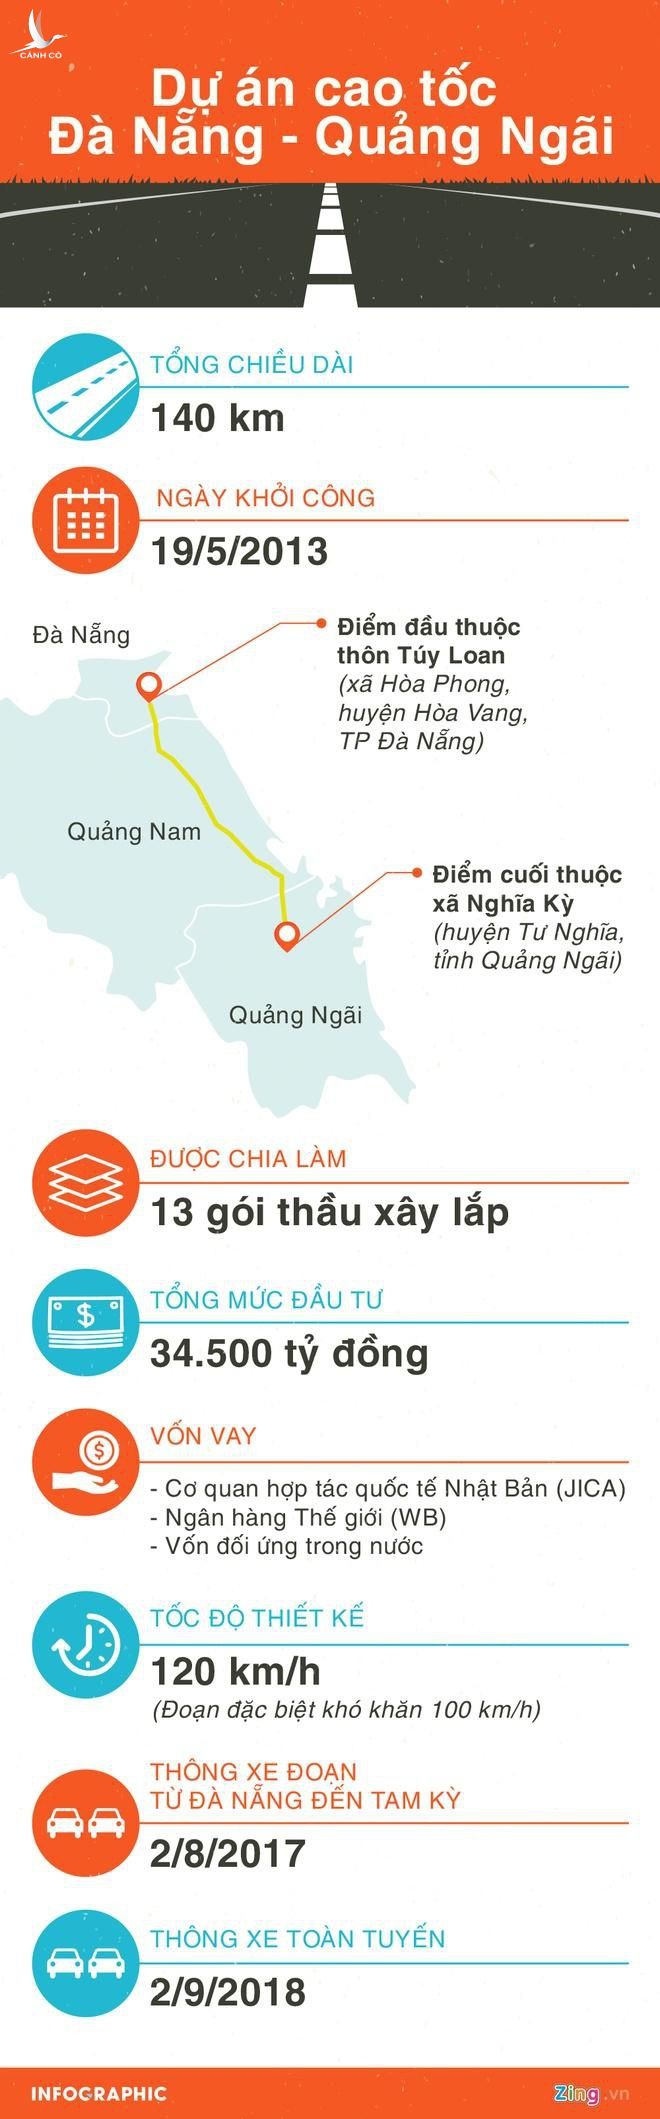 Cao toc Da Nang - Quang Ngai anh 3